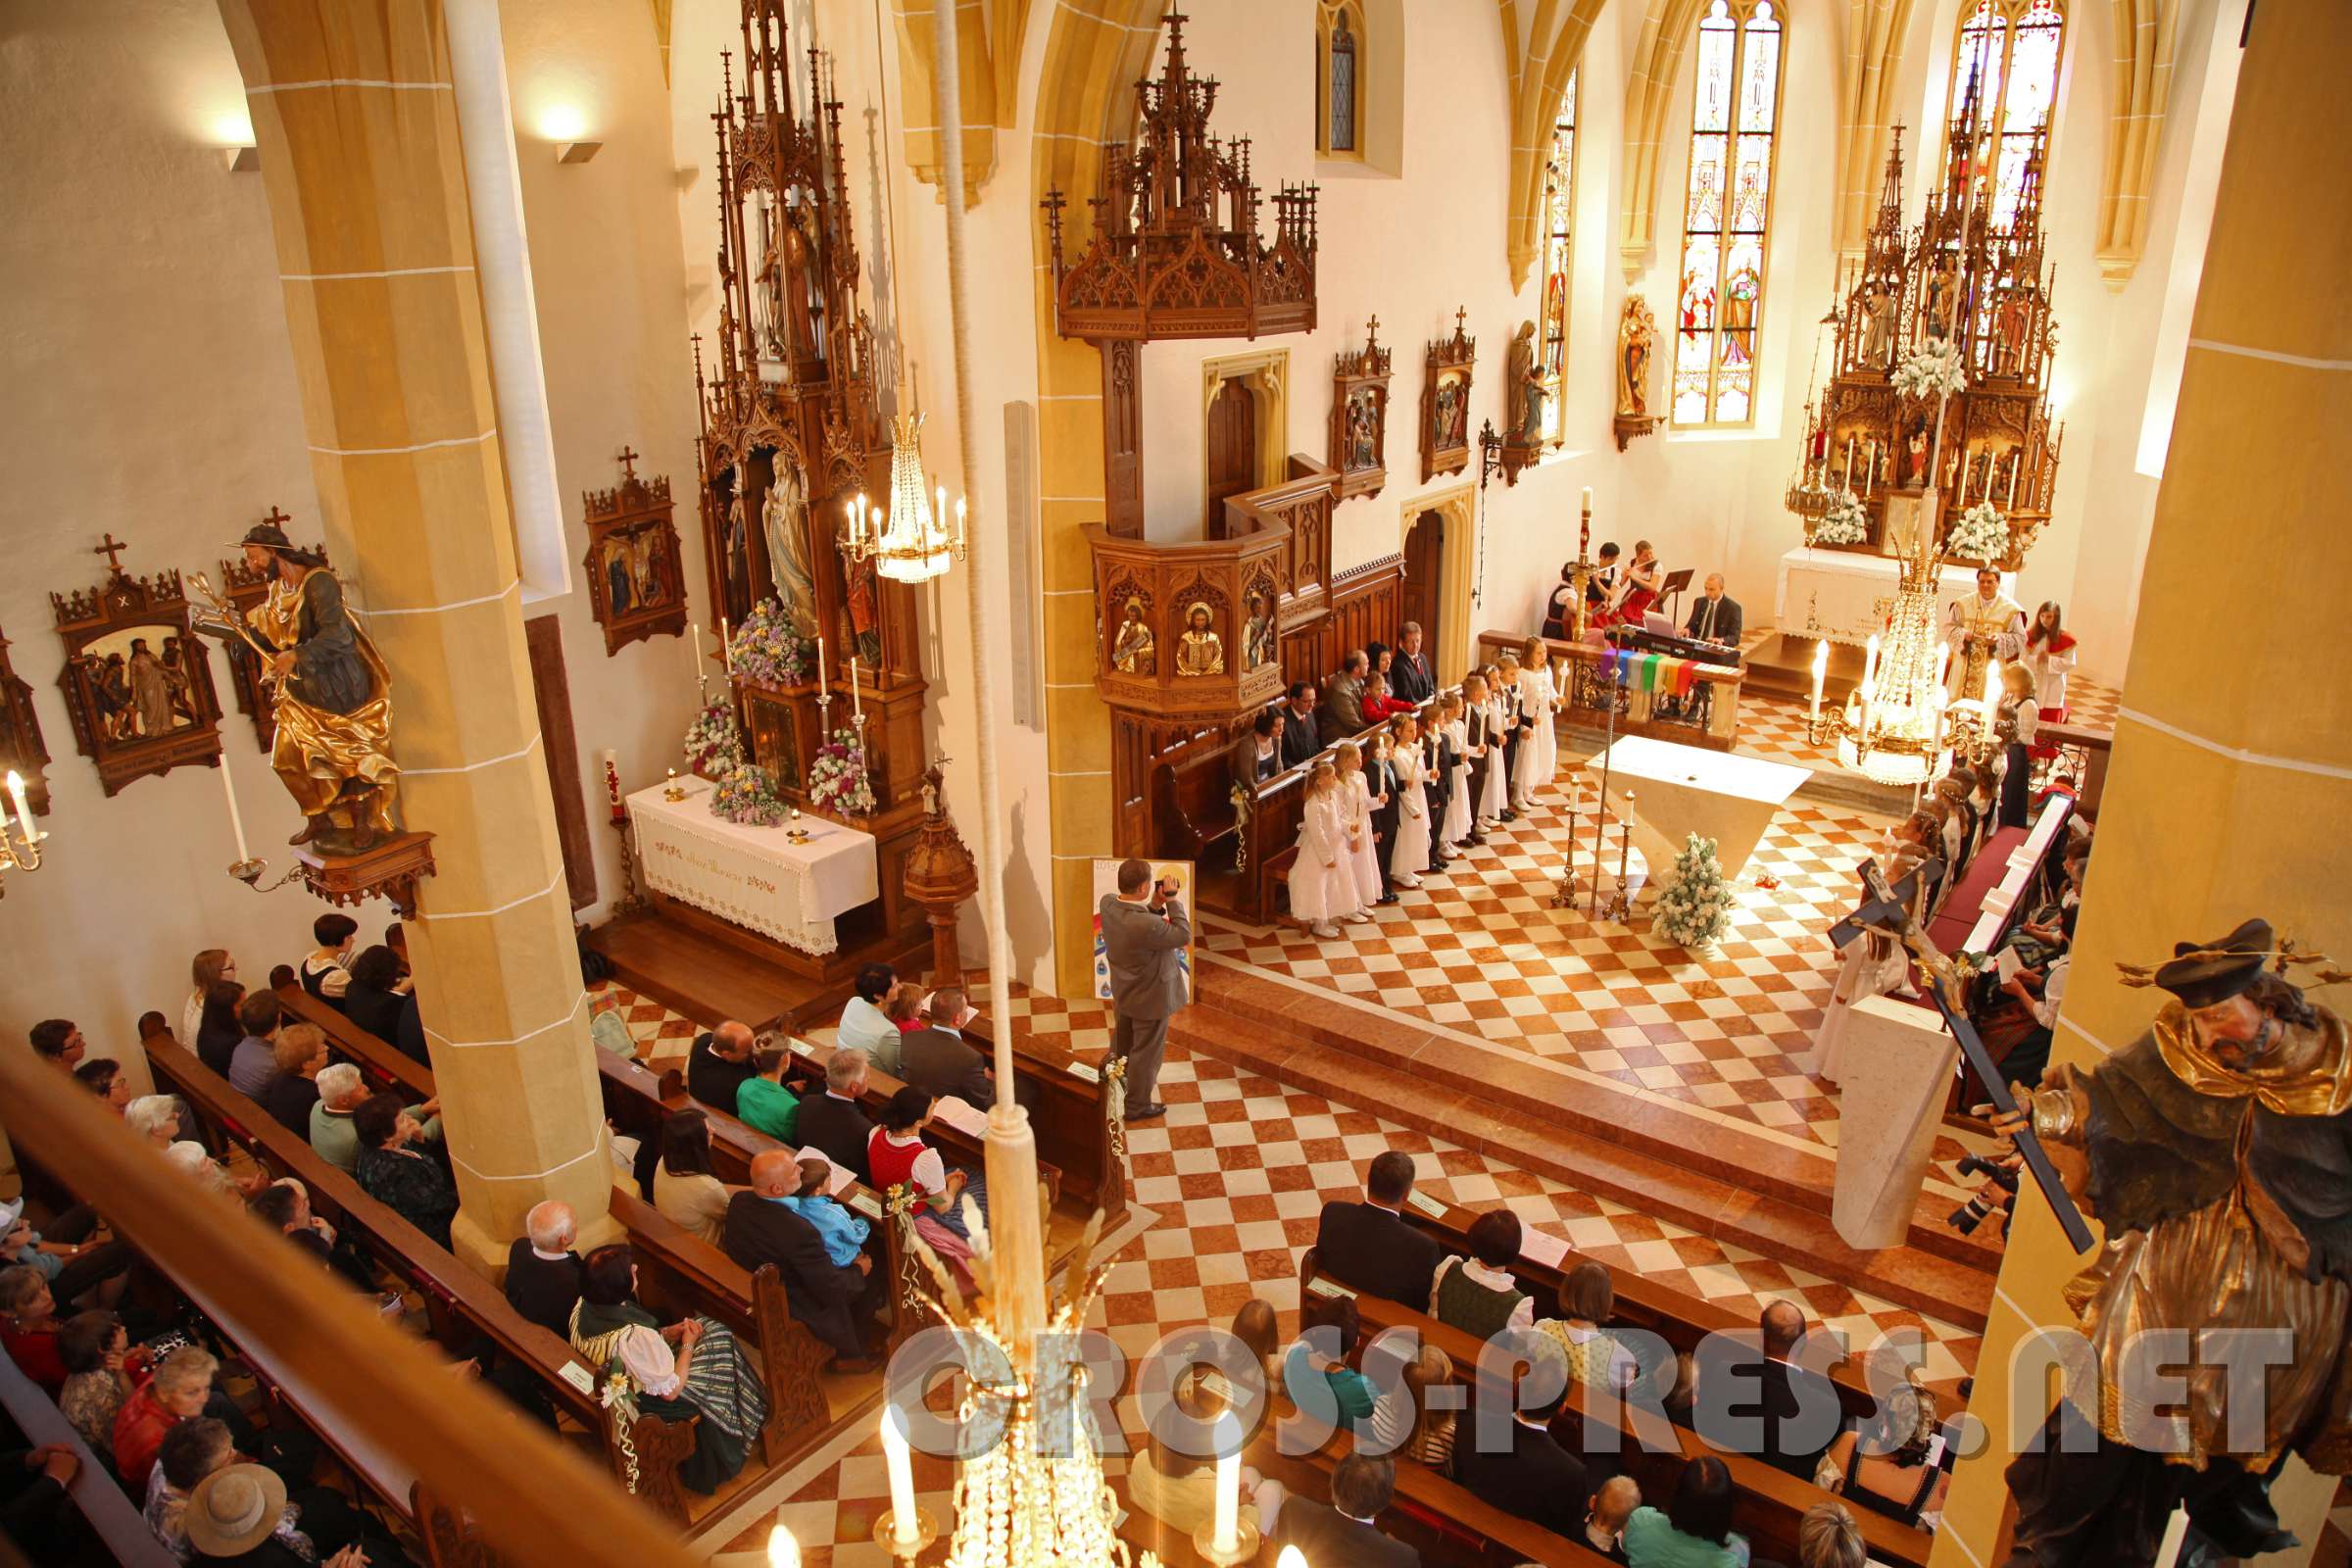 2013.05.09_09.32.52.jpg - Einen wunderbar festlichen Rahmen bildet die neu renovierte Pfarrkirche.